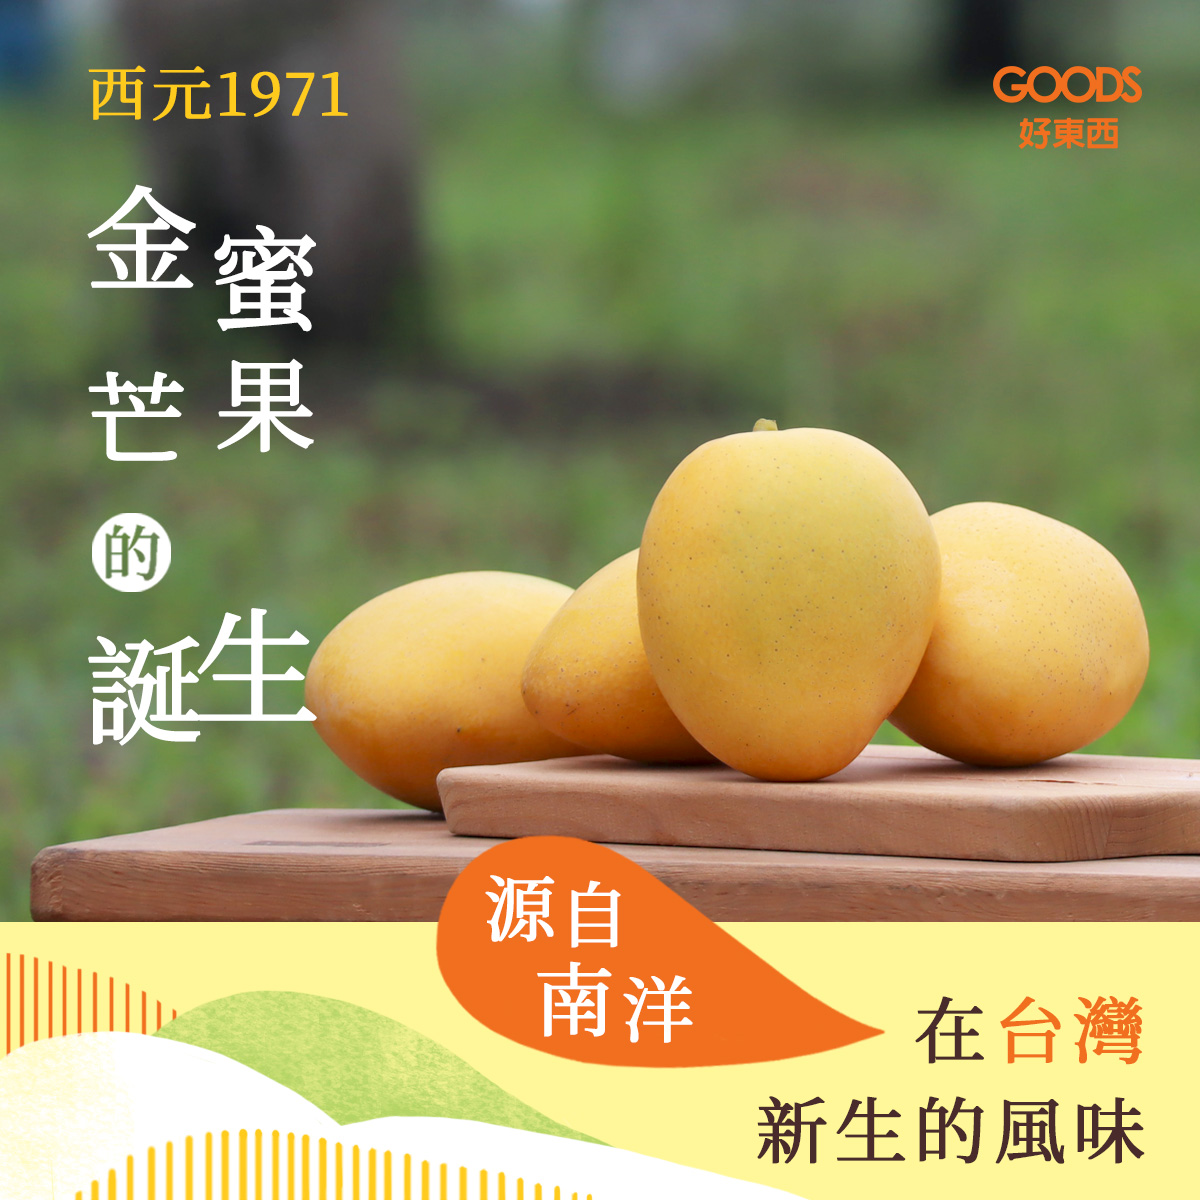 金蜜芒果的誕生 源自南洋